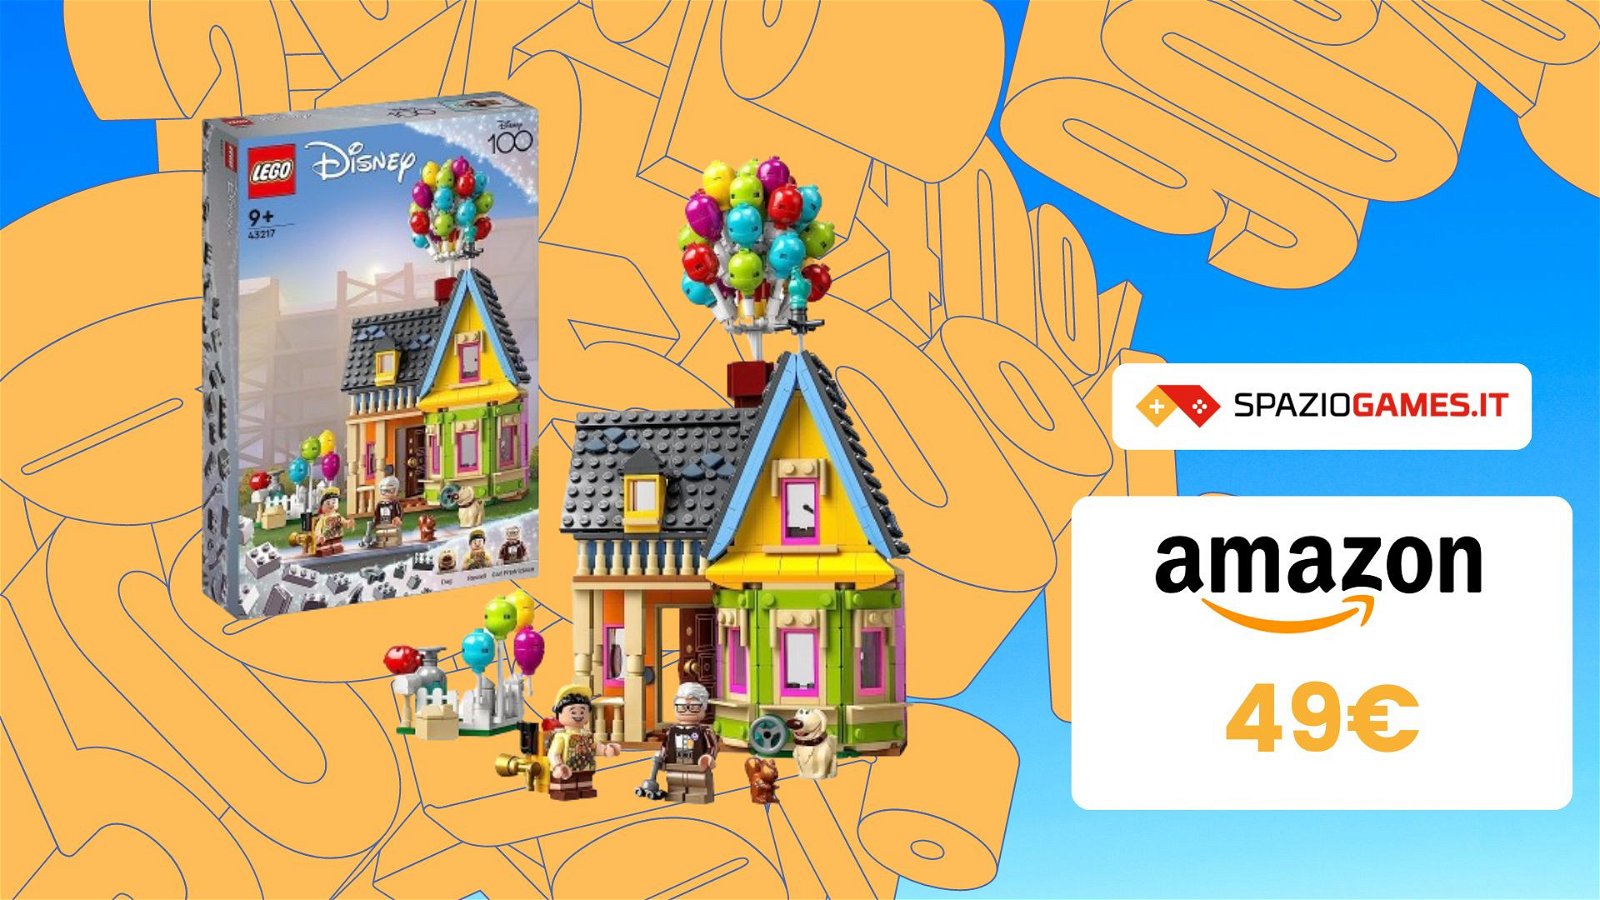 Casa di Up LEGO: BELLISSIMA e IN SCONTO su Amazon! La paghi SOLO 49€!